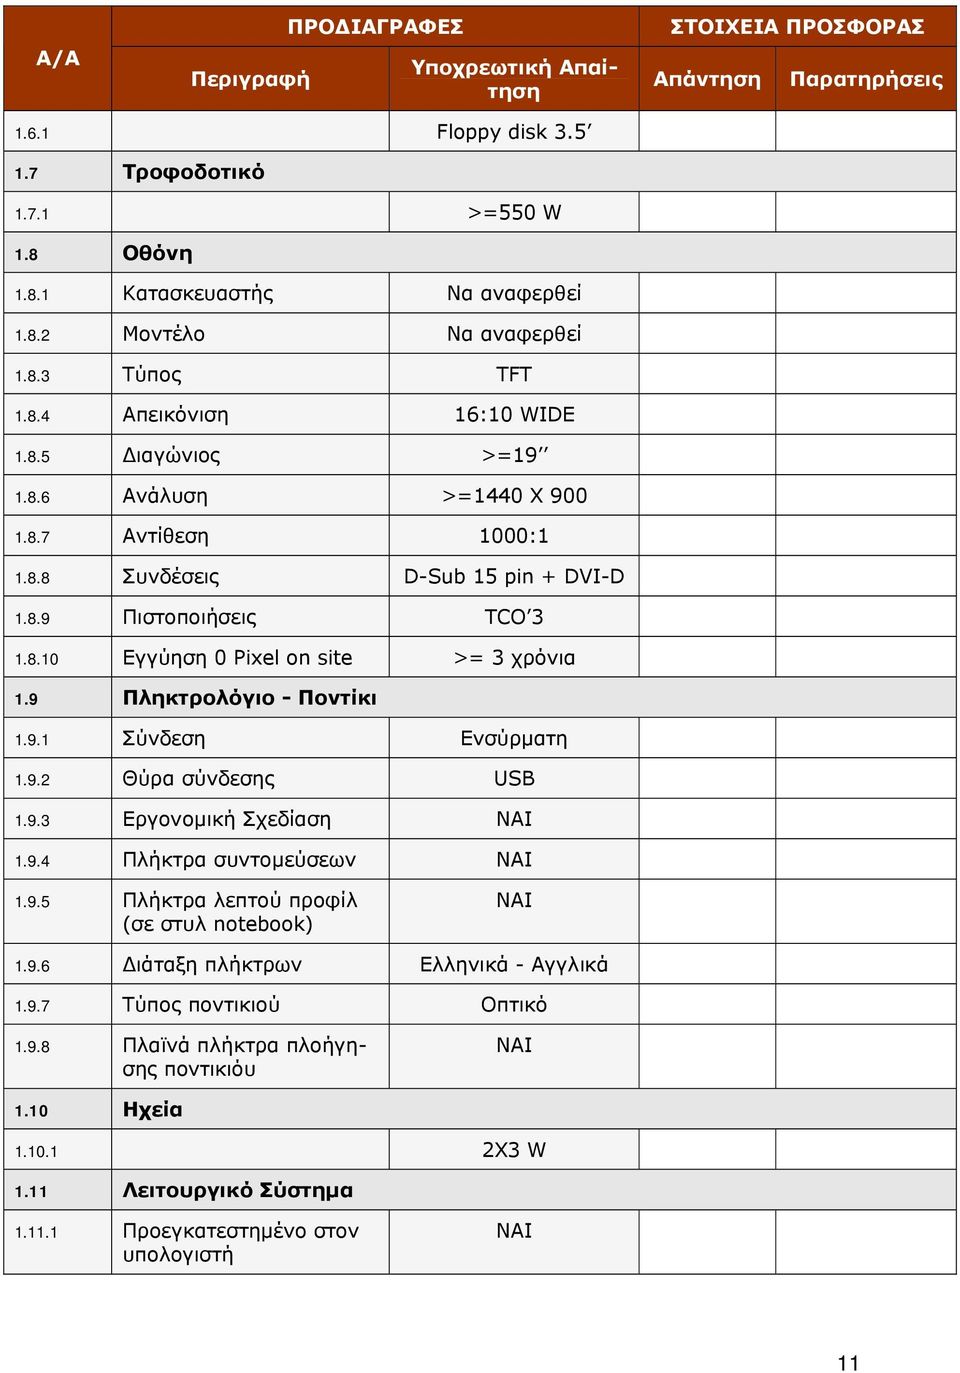 9 Πληκτρολόγιο - Ποντίκι 1.9.1 Σύνδεση Ενσύρματη 1.9.2 Θύρα σύνδεσης USB 1.9.3 Εργονομική Σχεδίαση 1.9.4 Πλήκτρα συντομεύσεων 1.9.5 Πλήκτρα λεπτού προφίλ (σε στυλ notebook) 1.9.6 Διάταξη πλήκτρων Ελληνικά - Αγγλικά 1.